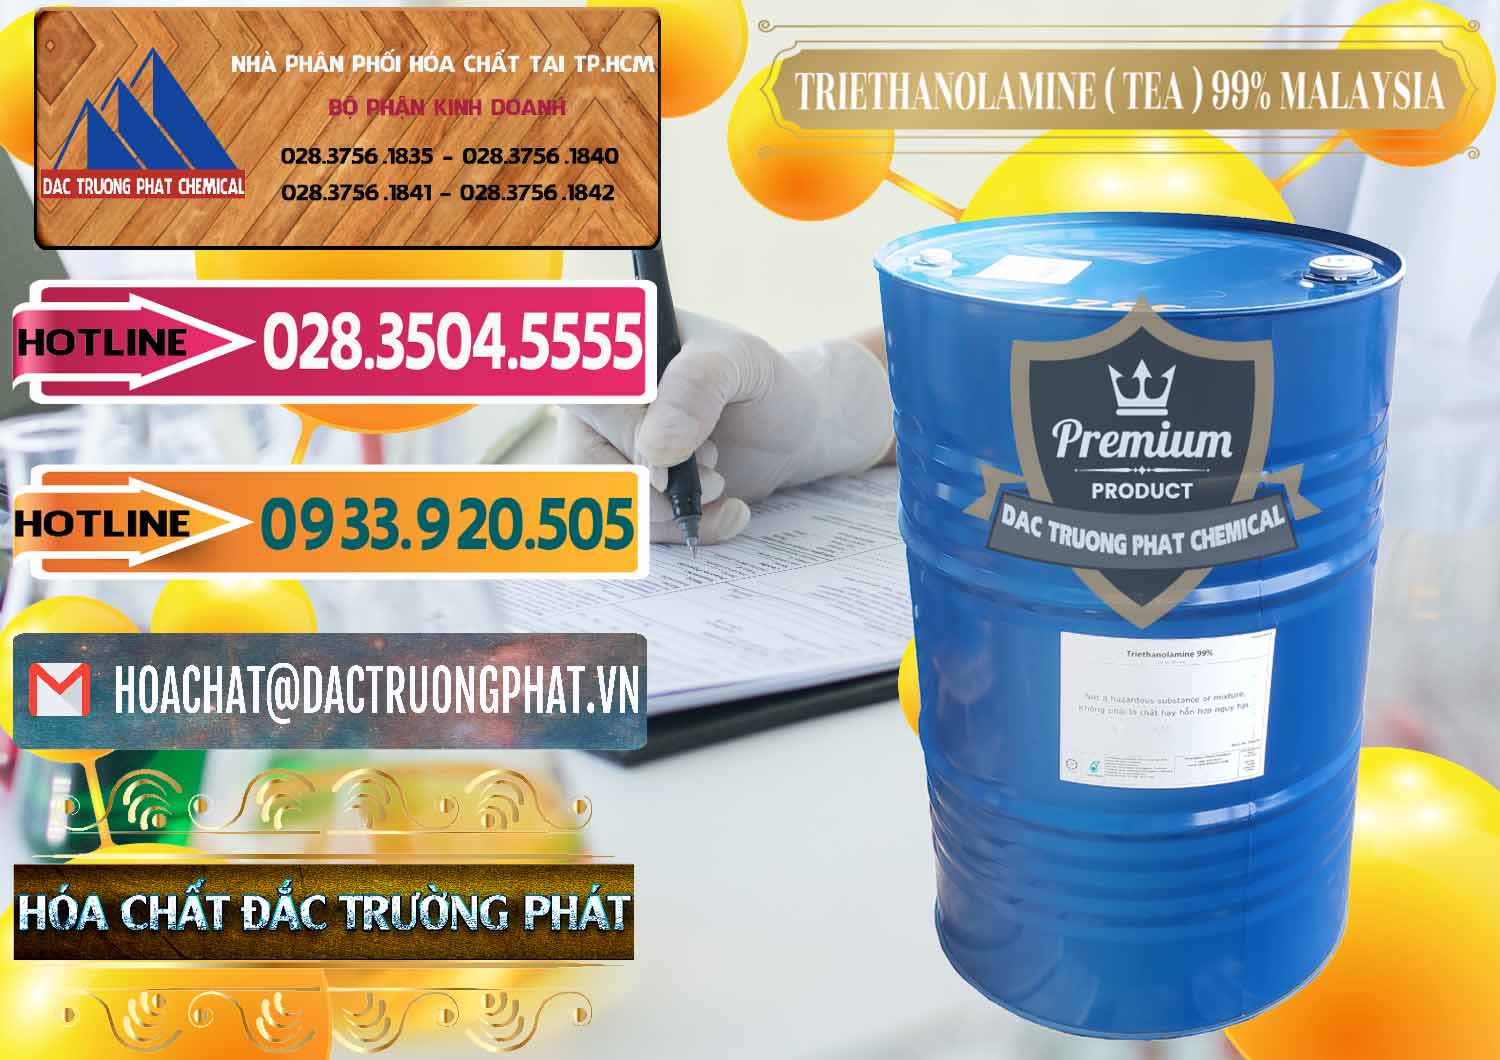 Đơn vị chuyên bán - cung cấp TEA - Triethanolamine 99% Mã Lai Malaysia - 0323 - Nơi bán ( cung cấp ) hóa chất tại TP.HCM - dactruongphat.vn